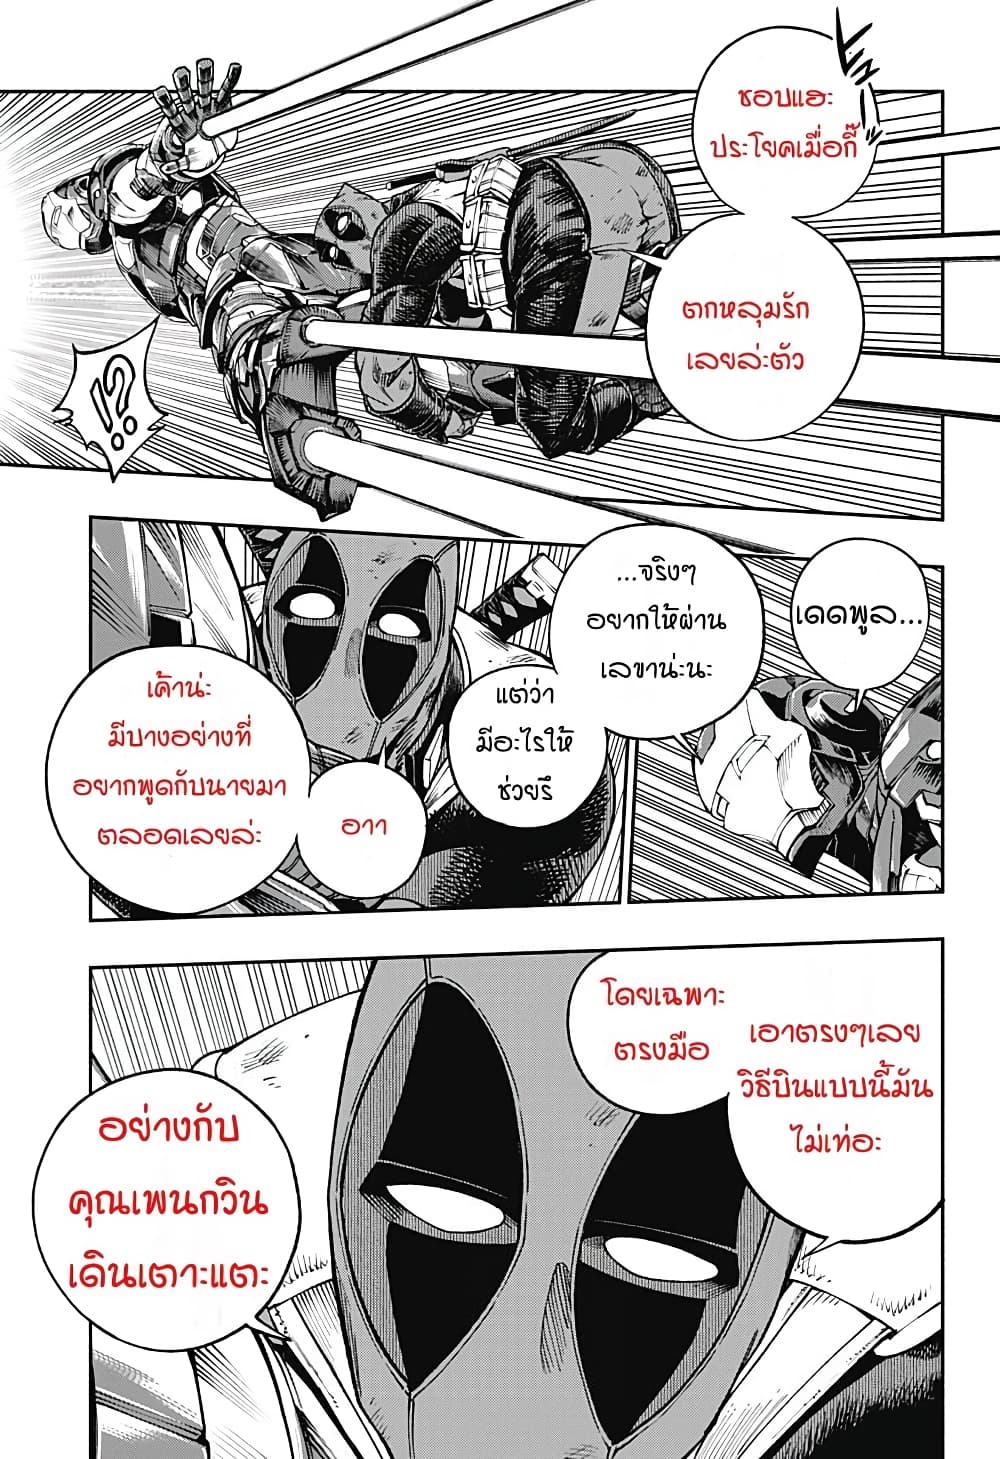 Deadpool: Samurai 13-13